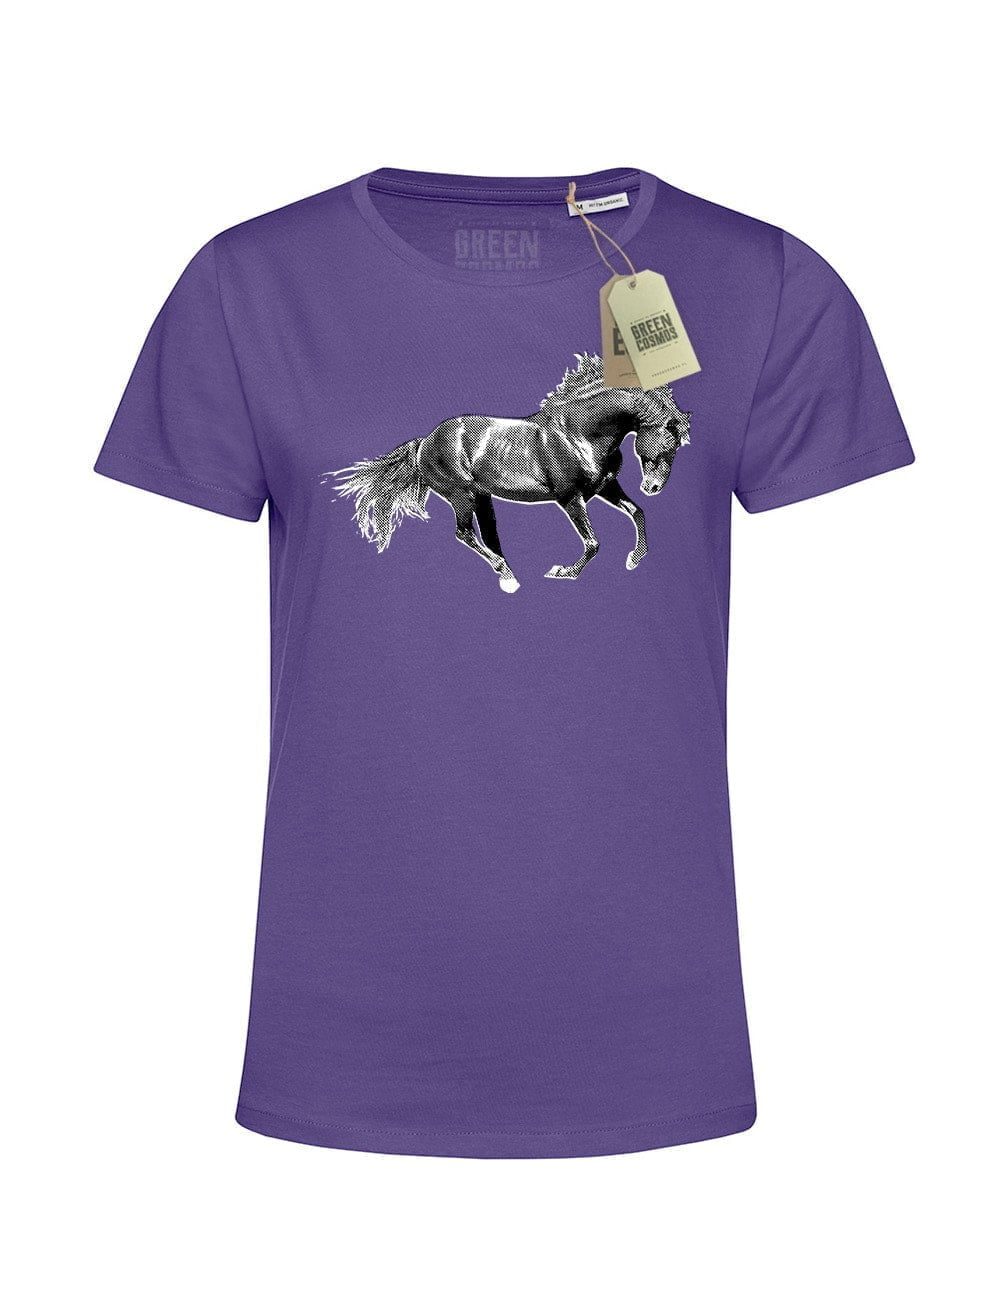 WILD HORSE koszulka męska